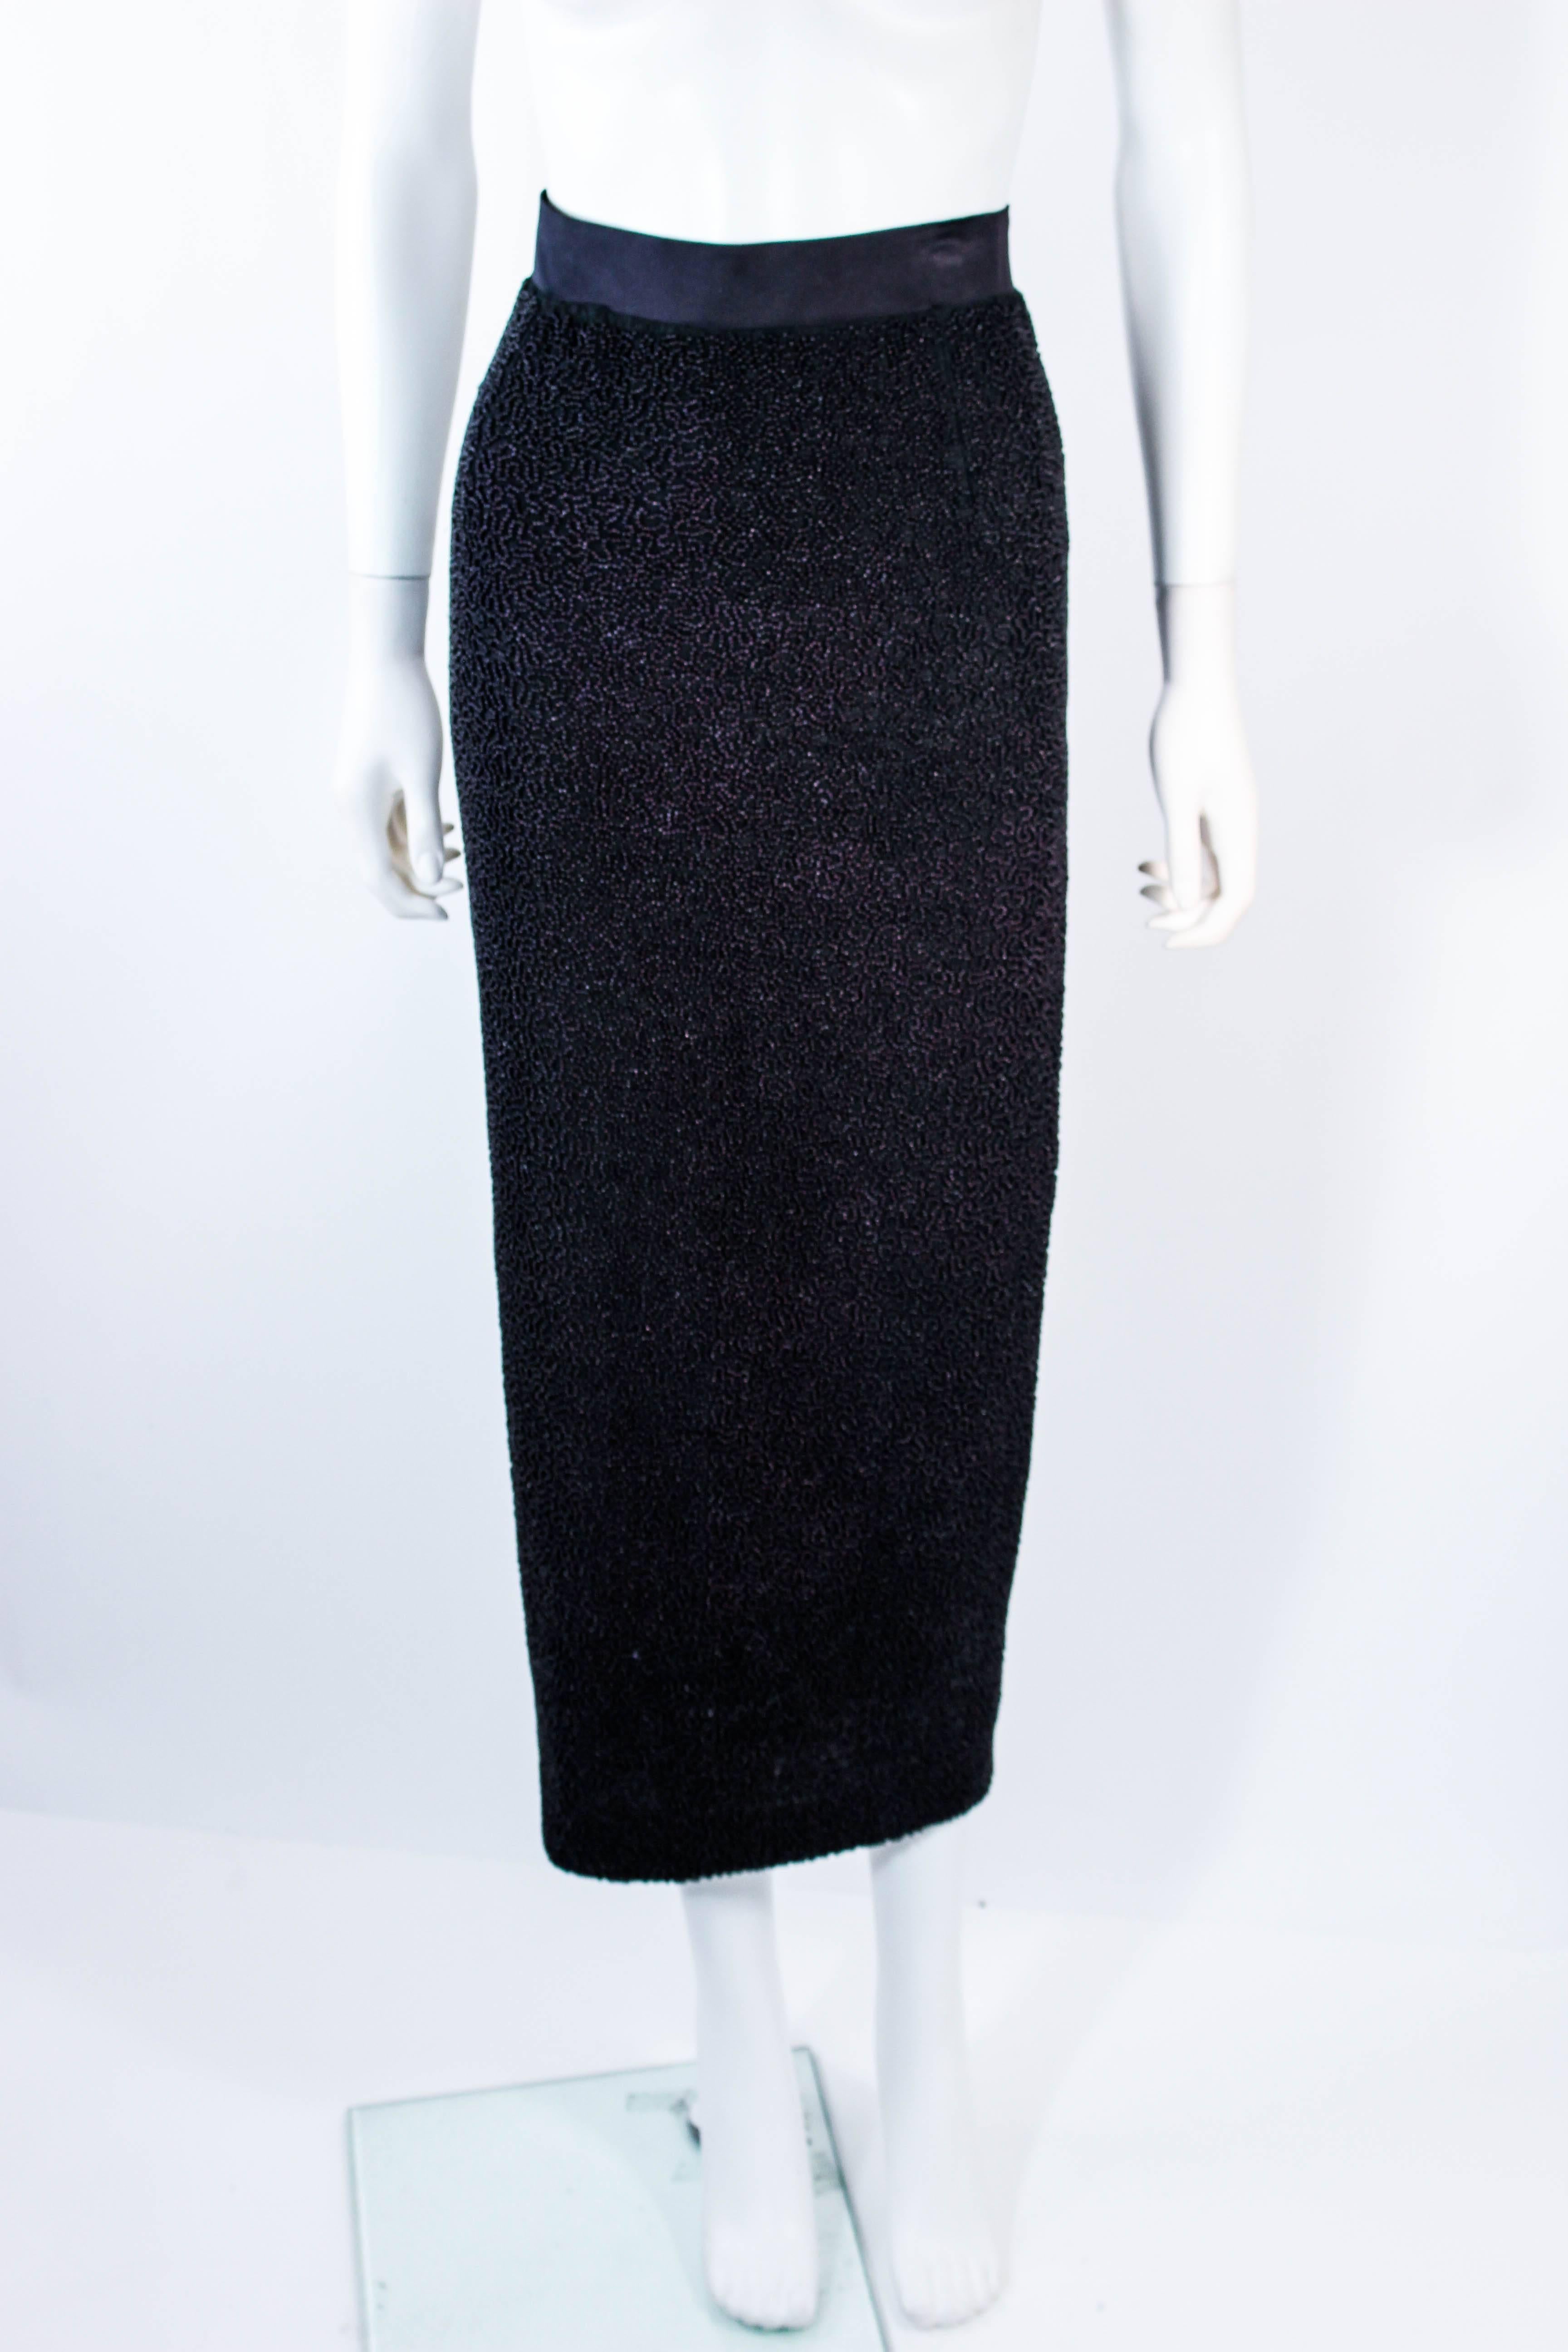 Black JEAN PAUL GAULTIER Vintage Beaded Full Length Silk Skirt Size 40 For Sale